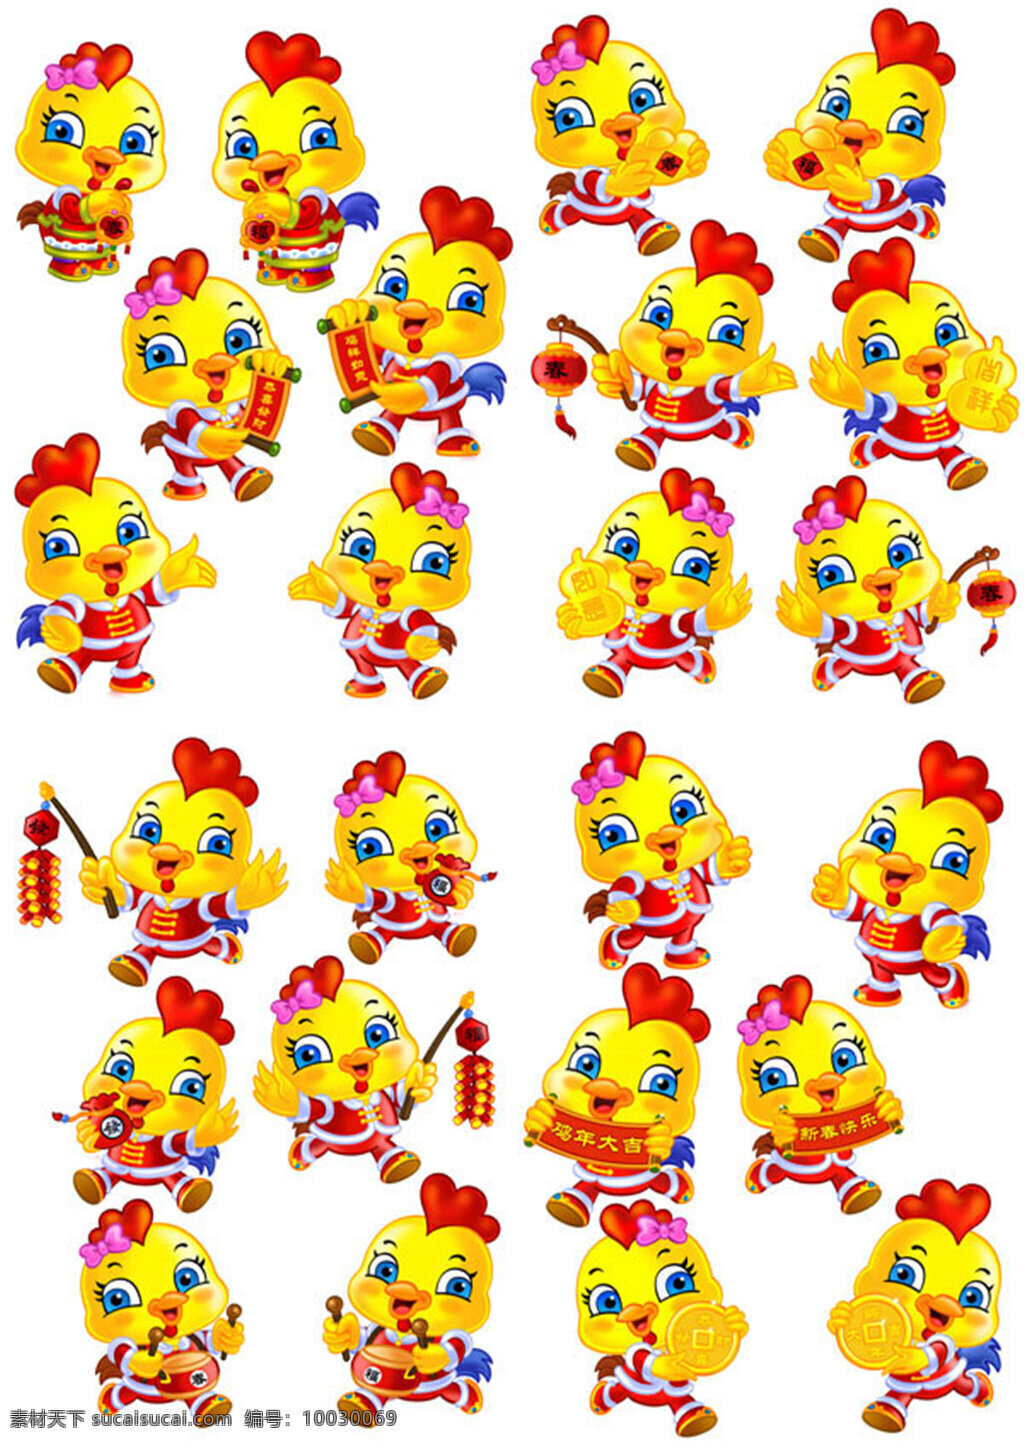 鸡年卡通形象 春节 黄色 鸡 卡通鸡 十二生肖 矢量素材 新年 鸡年 生肖 形象设计 鸡窝